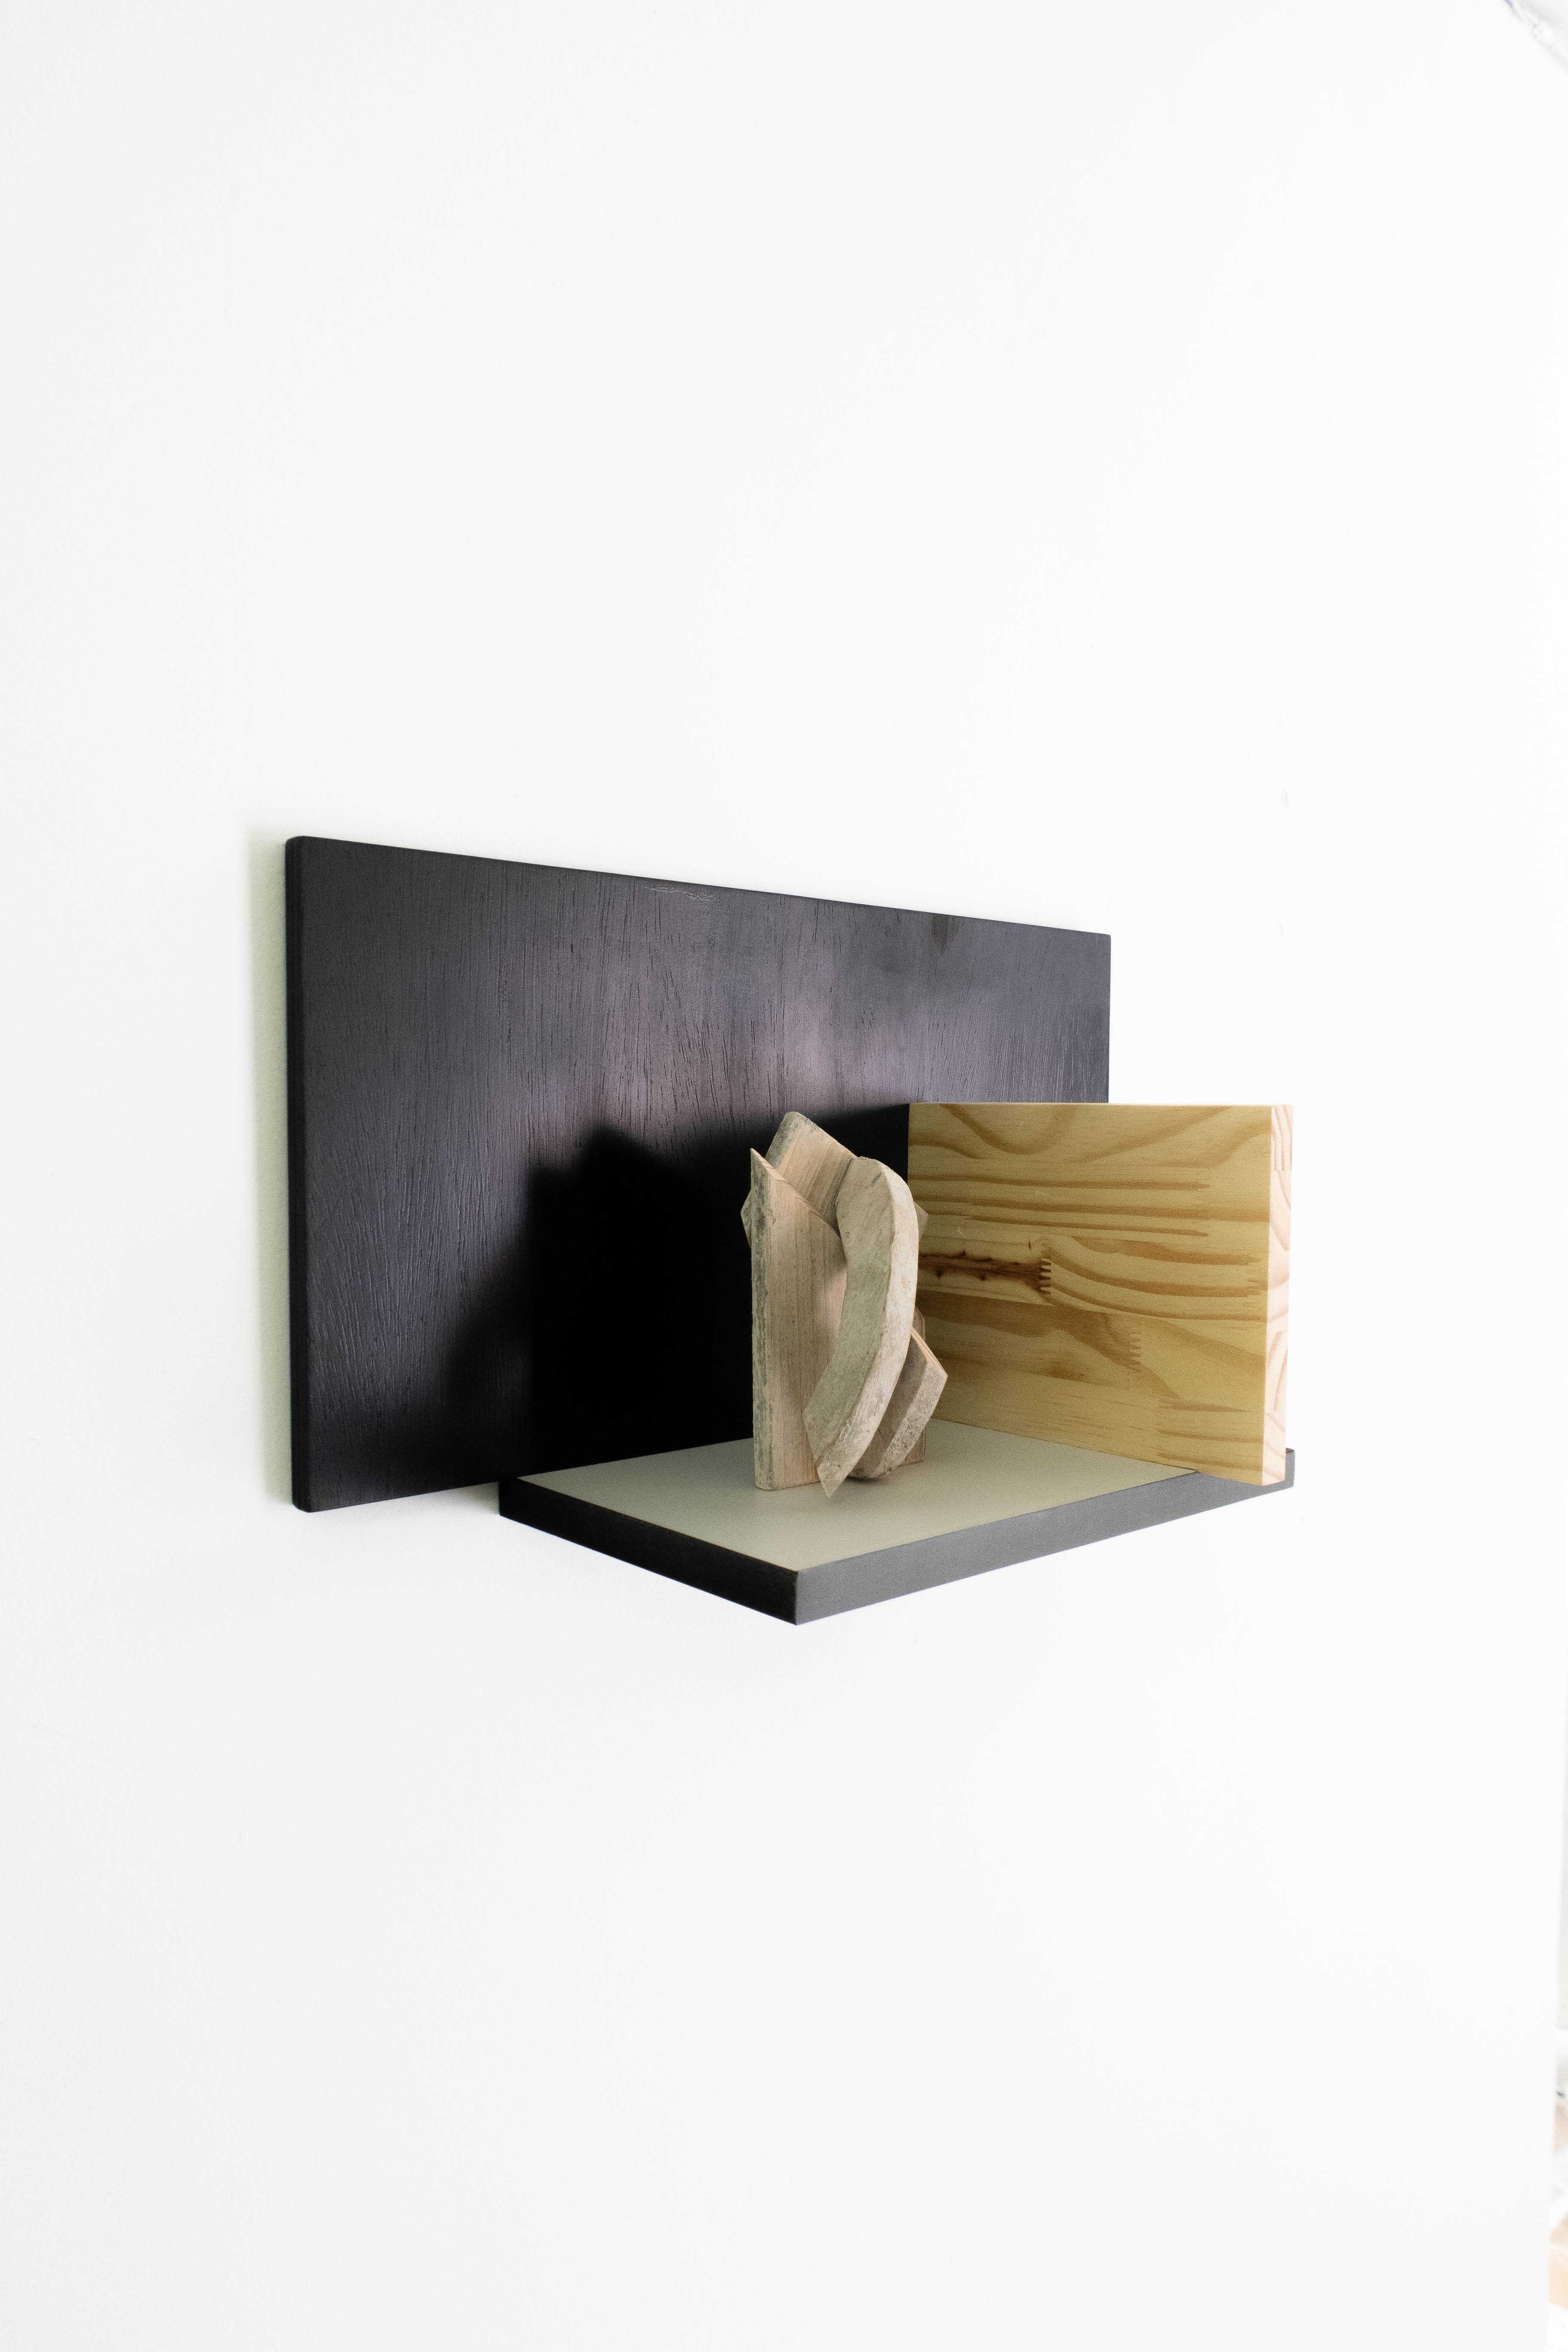 Gustavo Lourenção, Pa de Pedreiro, Escultura de parede em madeira e MDF, 26 x 52 x 21 cm, 2016